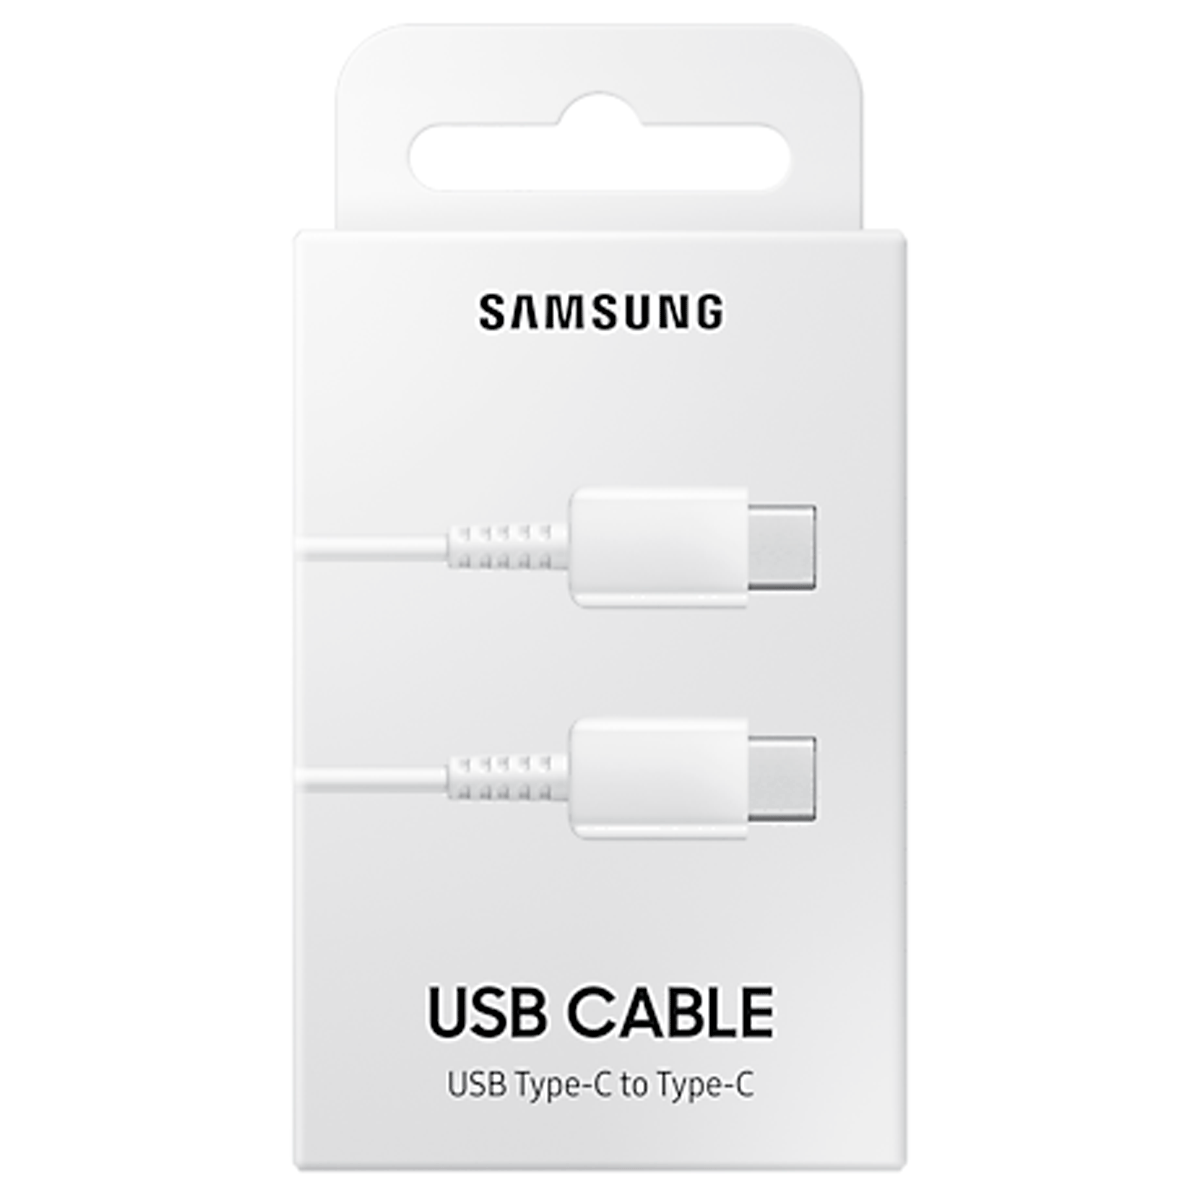 EP-DA705BWEGWW samsung                                                      | CABLE USB SAMSUNG ORIGINAL MAX 3A USB 2.0 TIPO C A BLANCO                                                                                                                                                                                                 